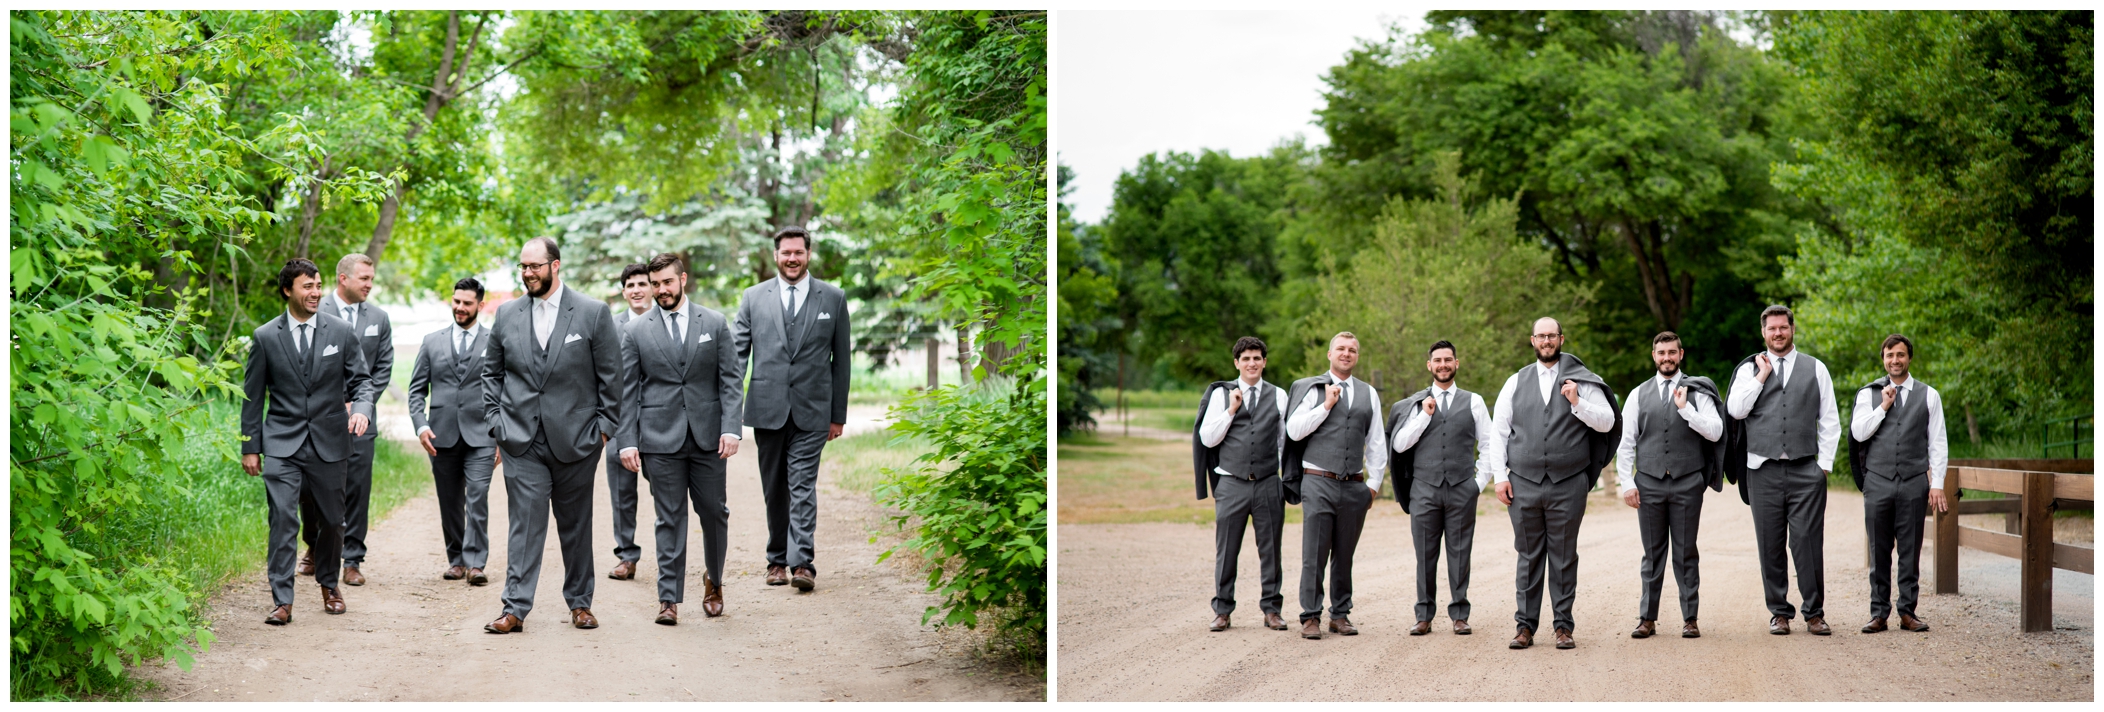 groomsmen holding jackets over shoulder at Denver Colorado outdoor wedding 